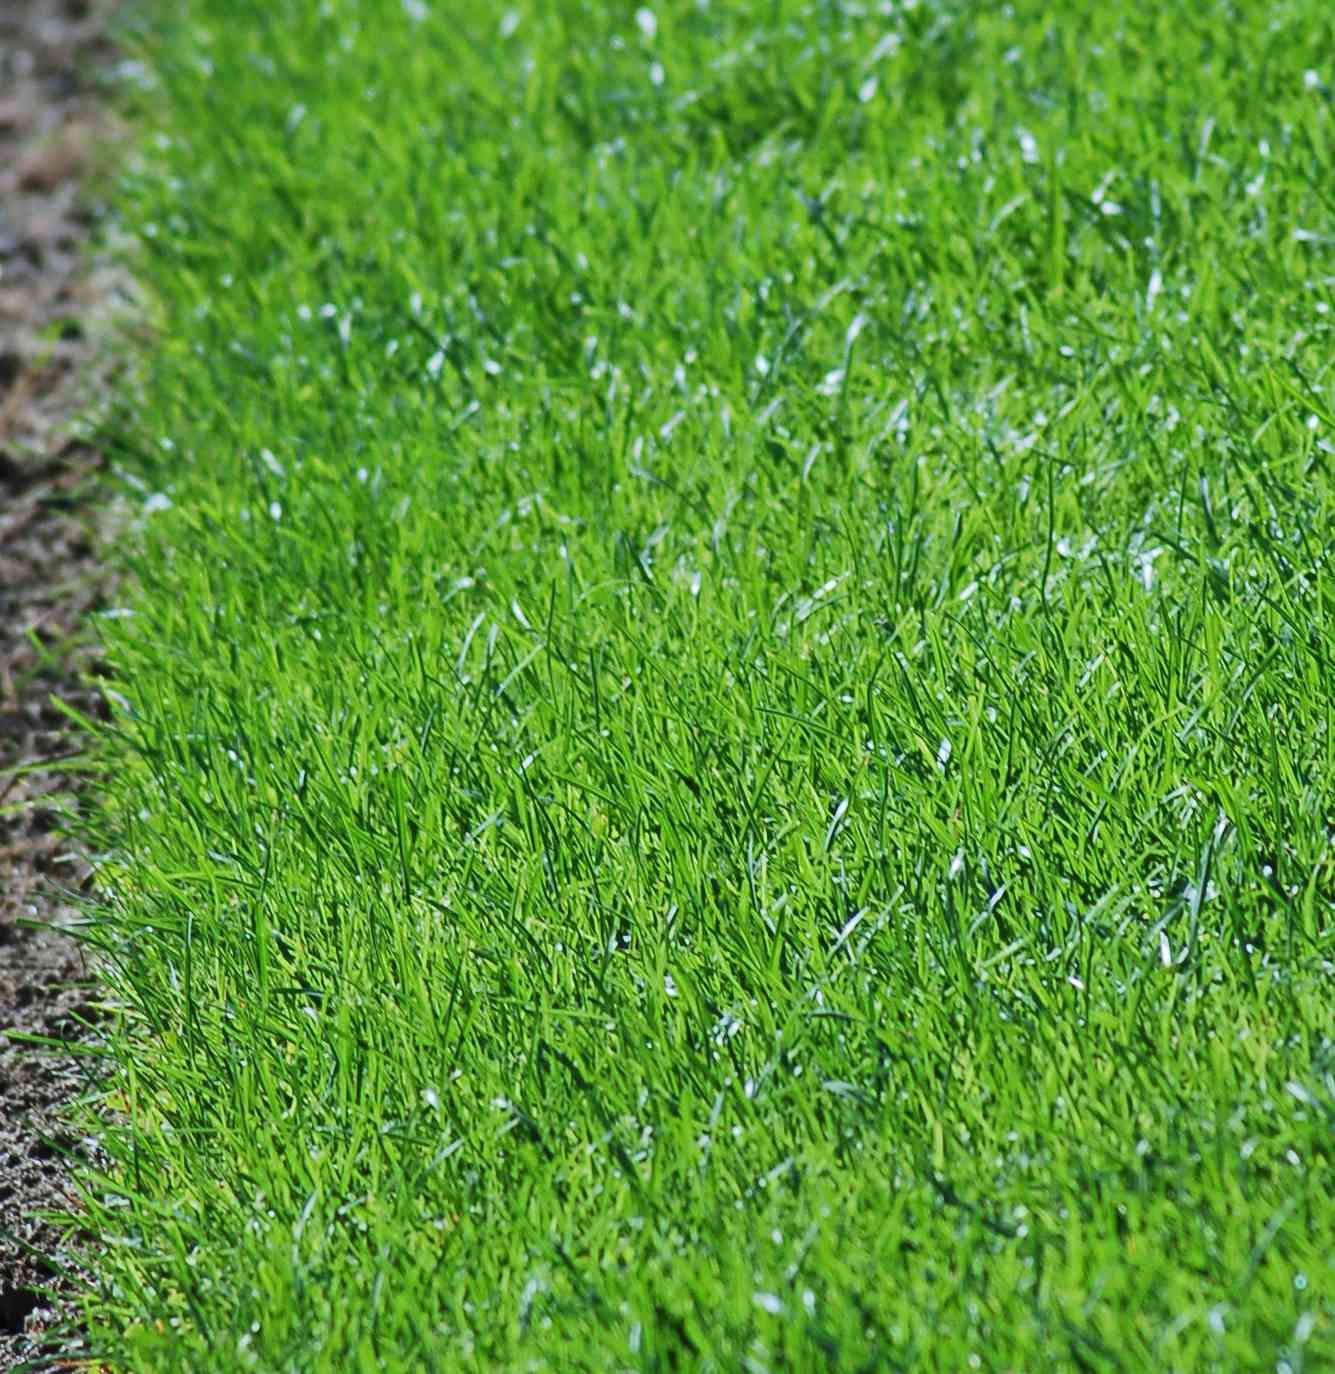 Skalpieren Sie Ihren Rasen nicht, wenn Sie gesundes Gras haben wollen (Bild).